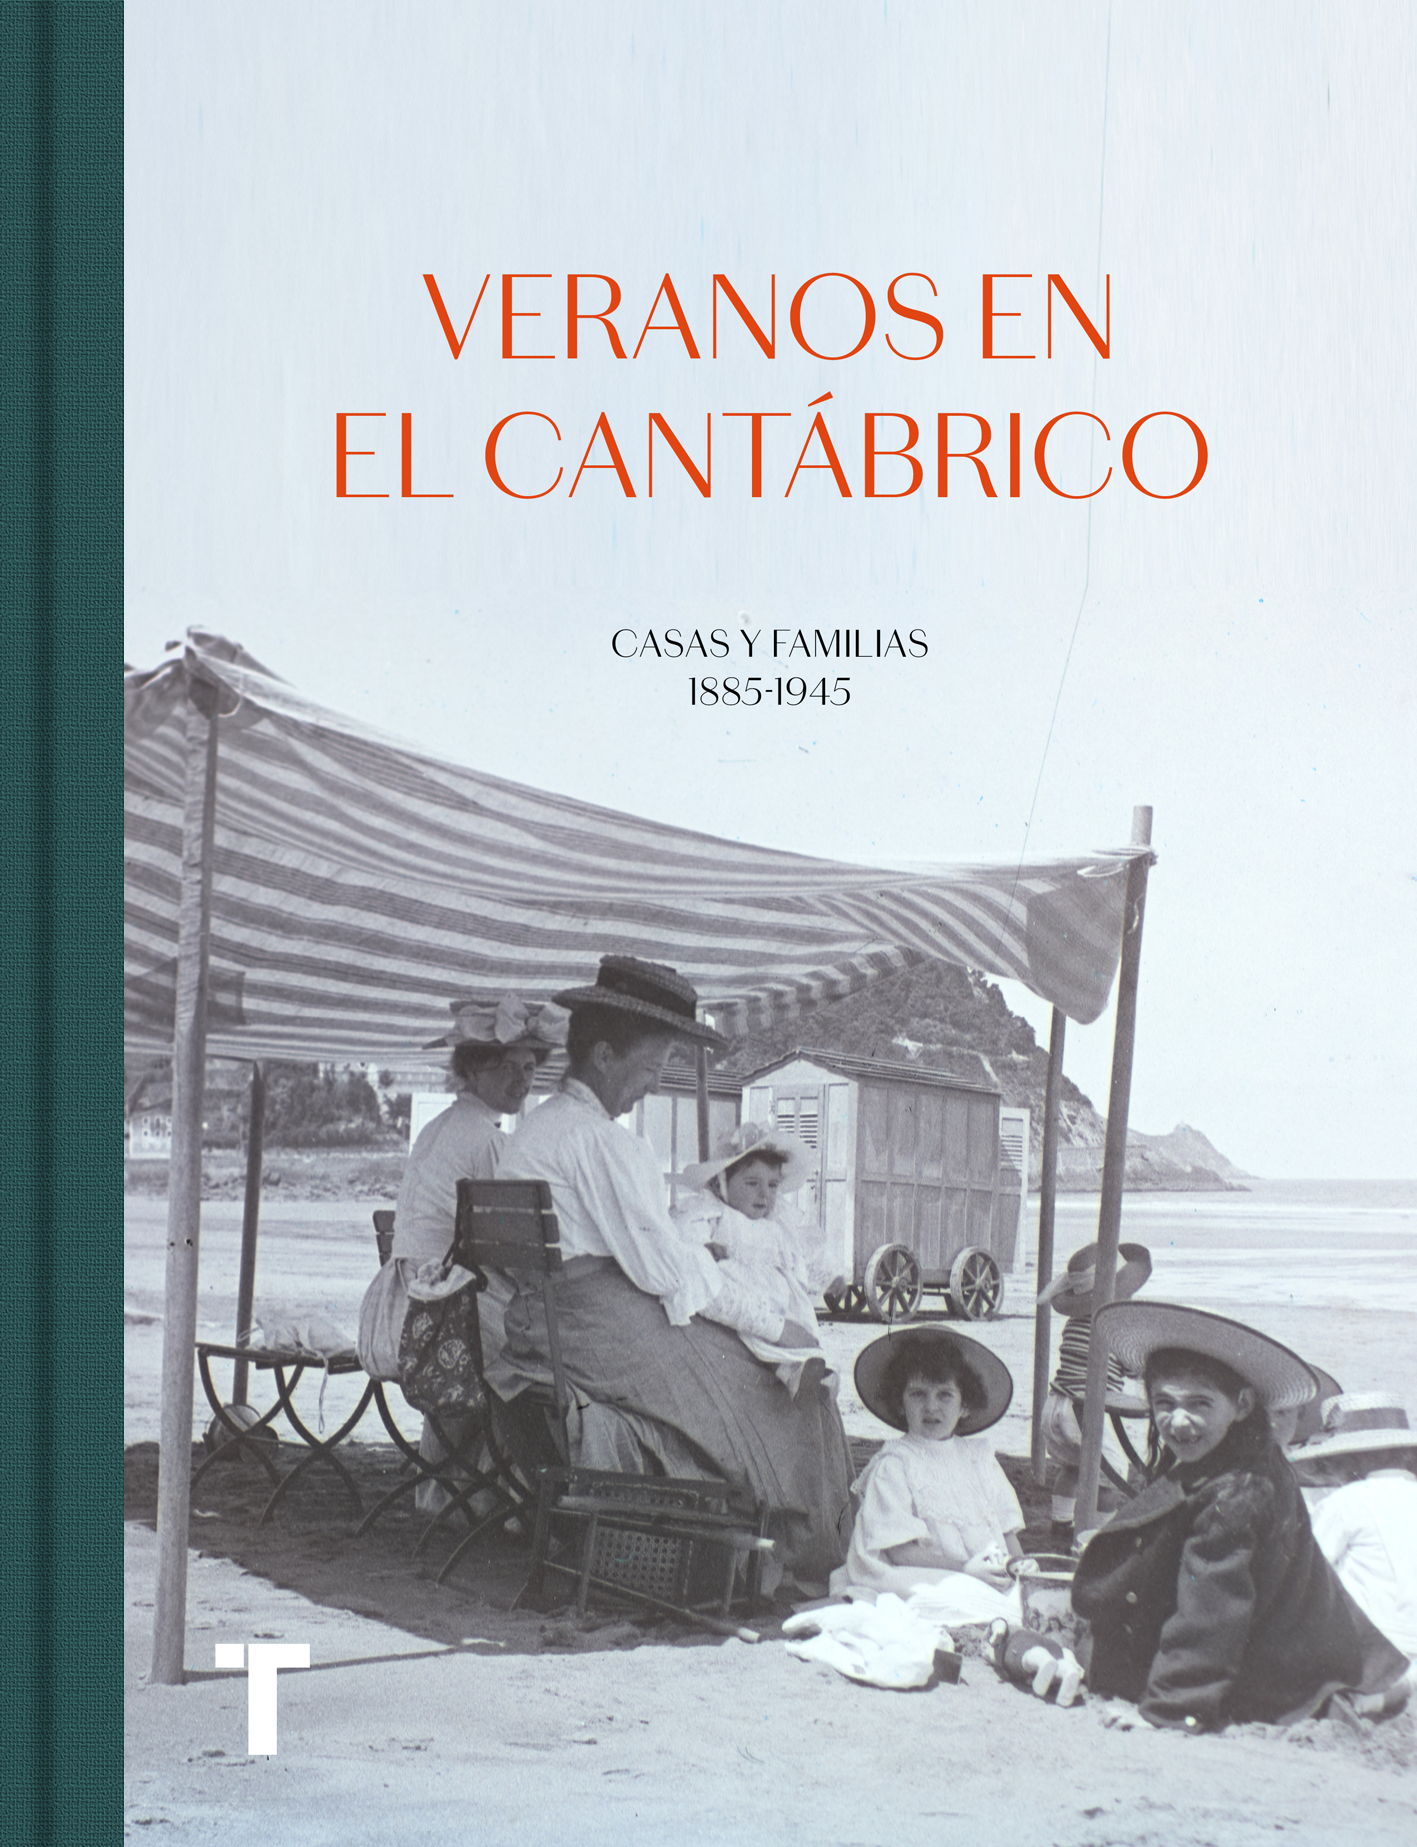 Veranos en el Cantábrico   «Casas y familias 1885-1945»